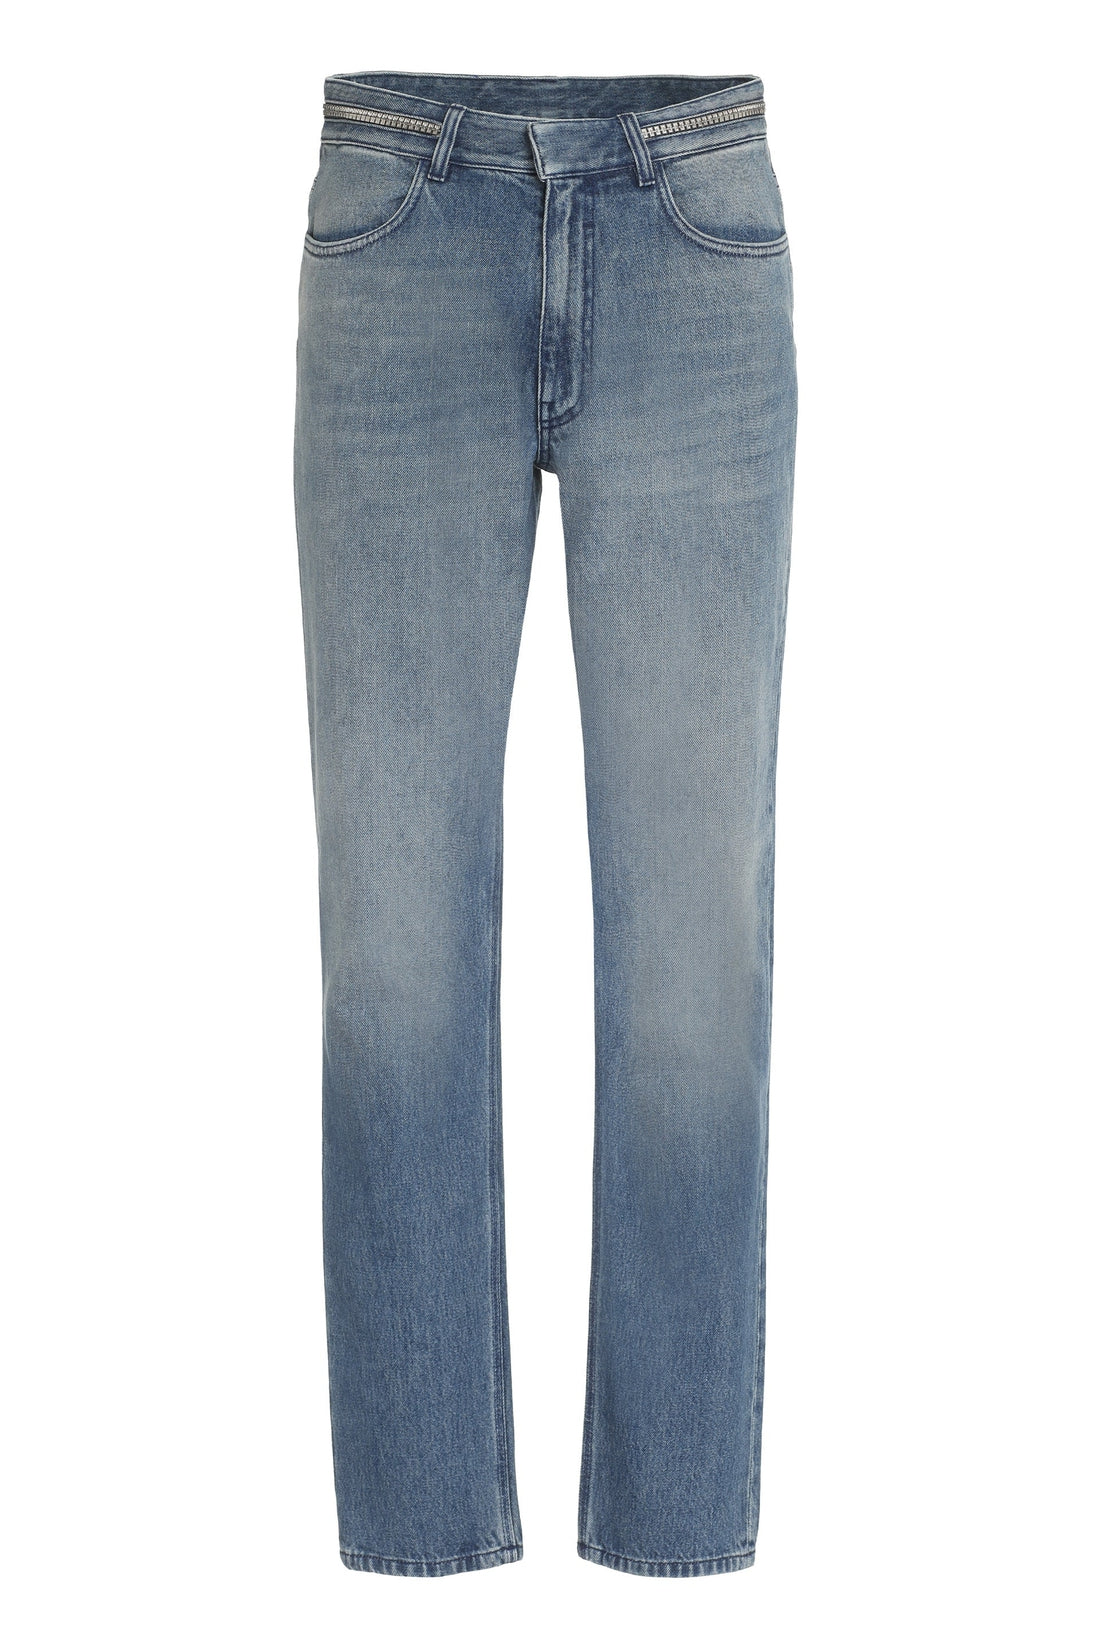 Givenchy-OUTLET-SALE-Slim fit jeans-ARCHIVIST